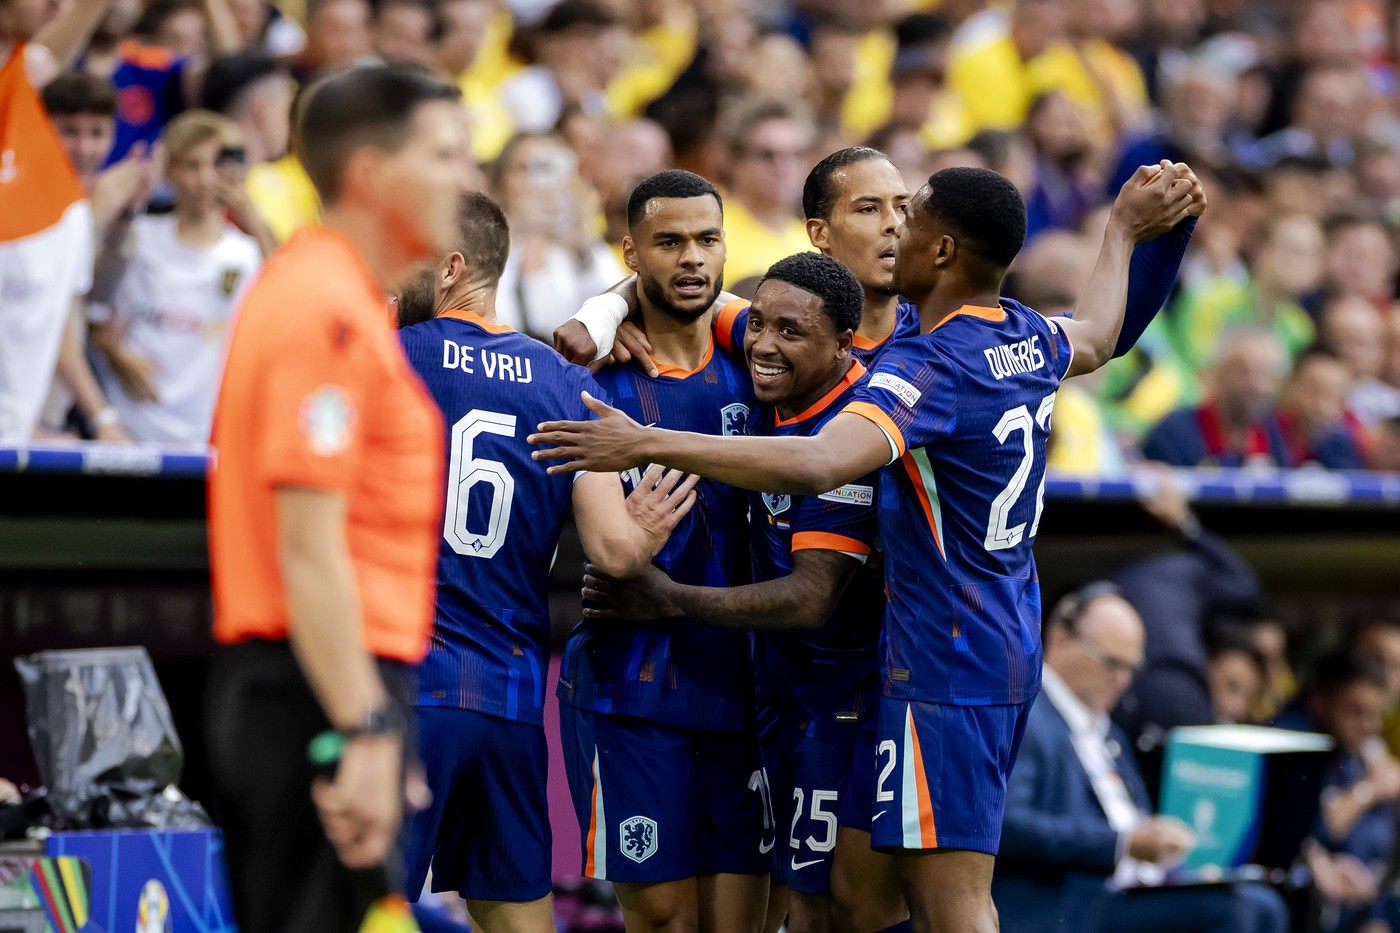 Presa din Olanda a reacționat după victoria la scor în fața României: ”În sfârșit!”